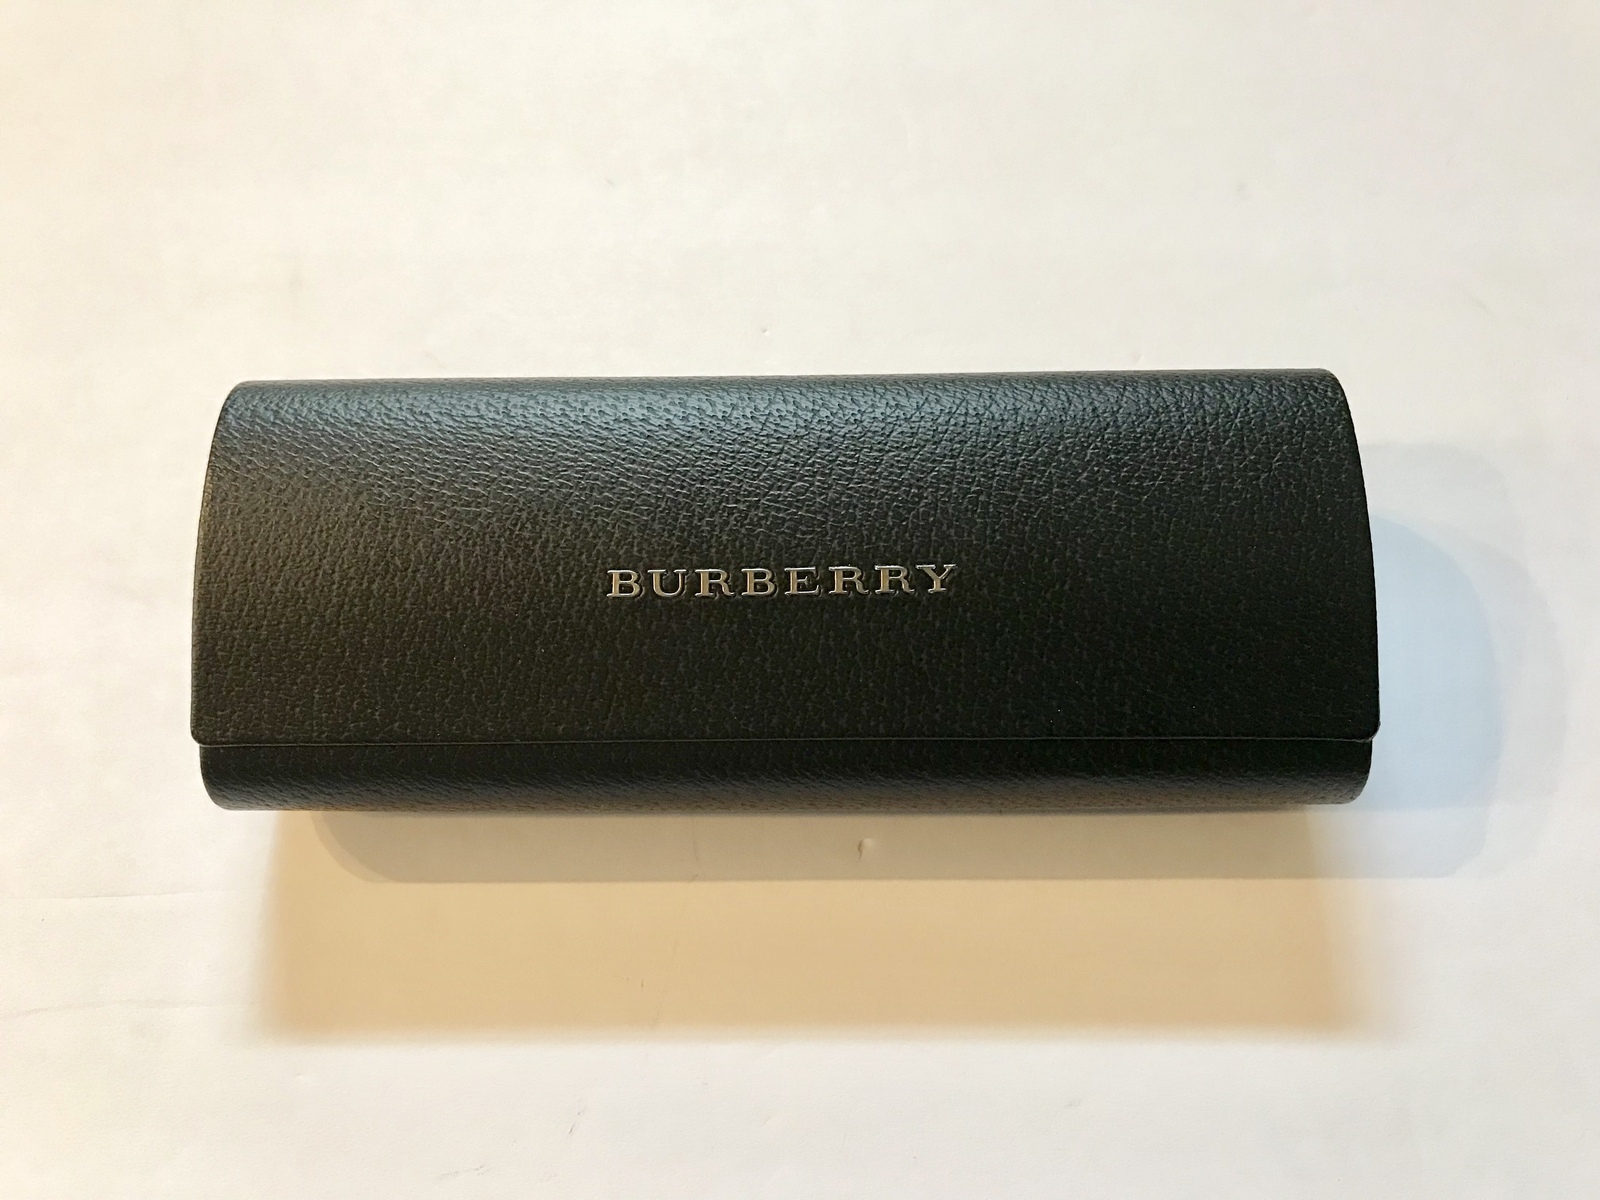 Burberry Sunglass Case: 1 listing